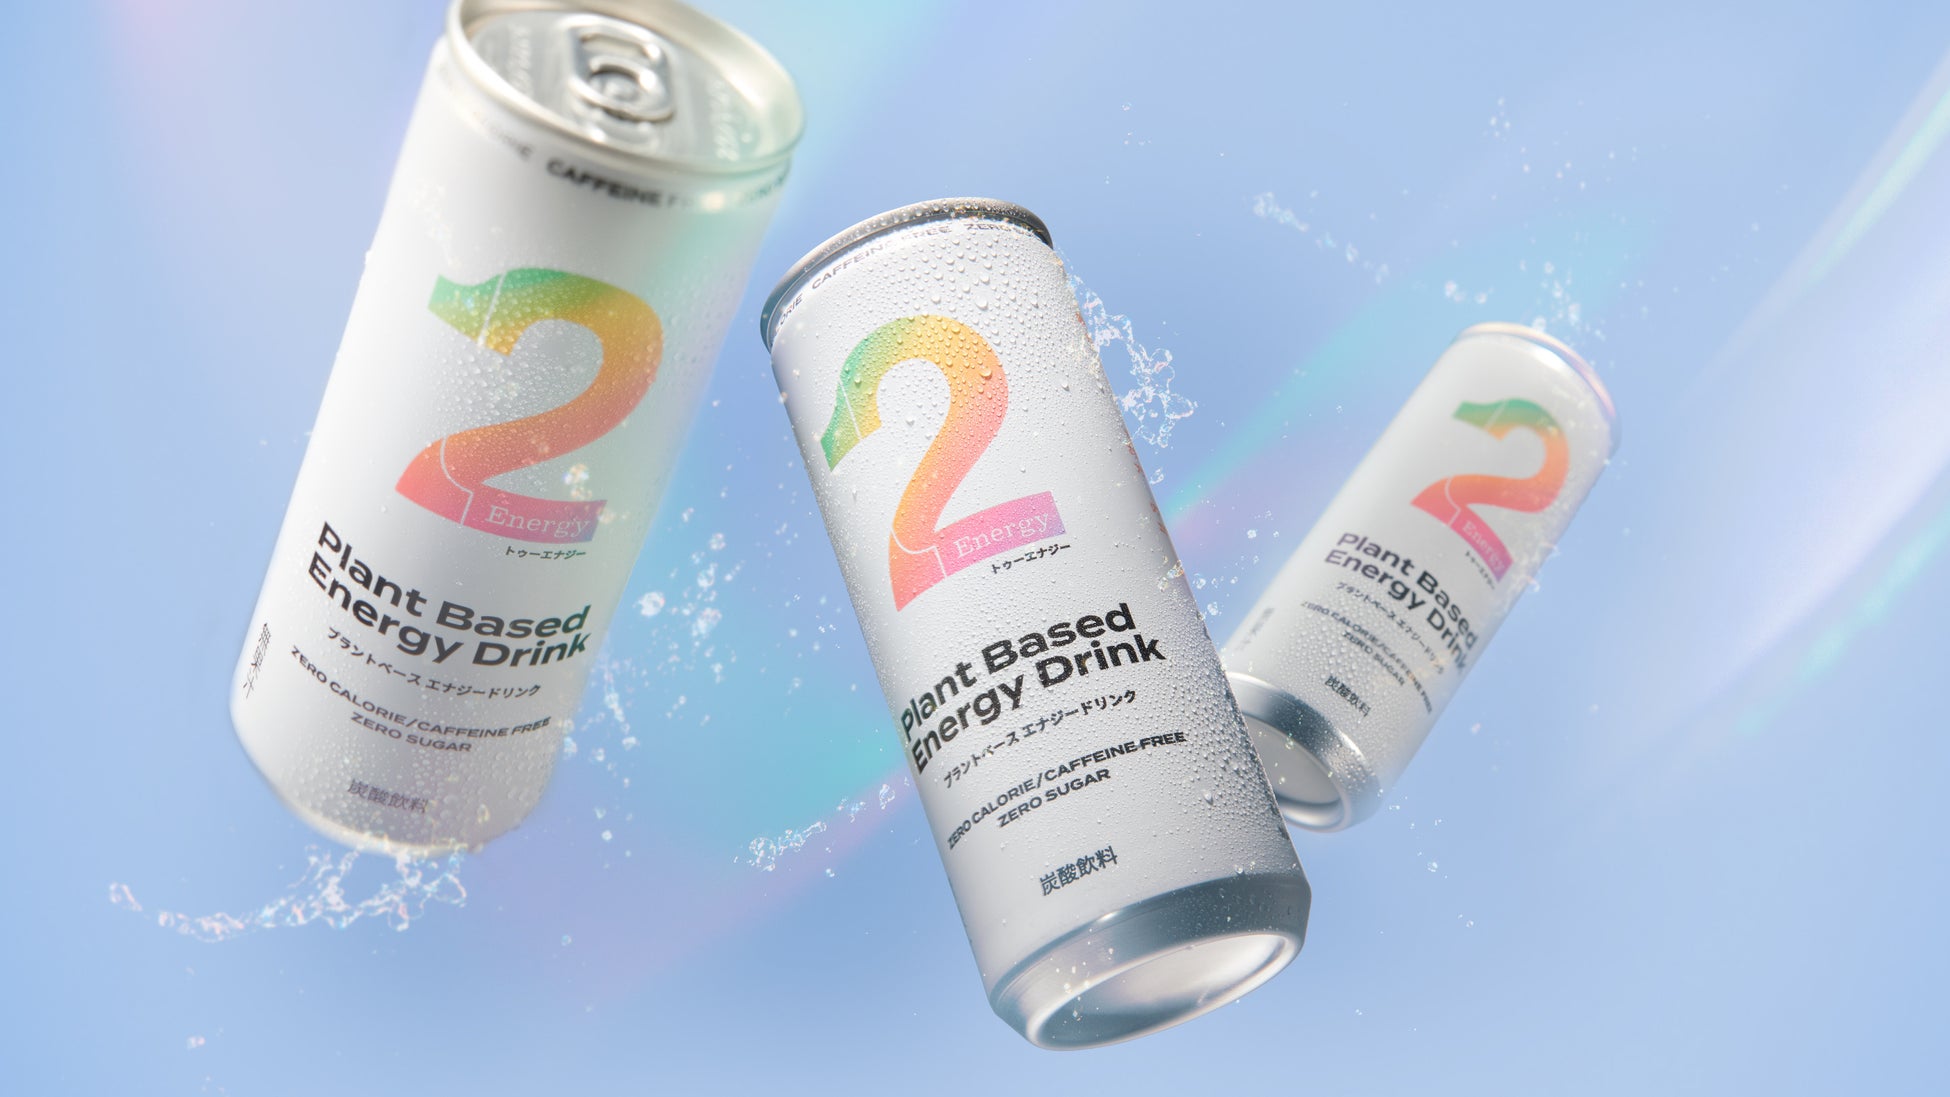 カフェインフリー・ゼロカロリー・ゼロシュガーの3つのギルトフリーを実現したプラントベースエナジードリンク「2Energy」9月26日発売